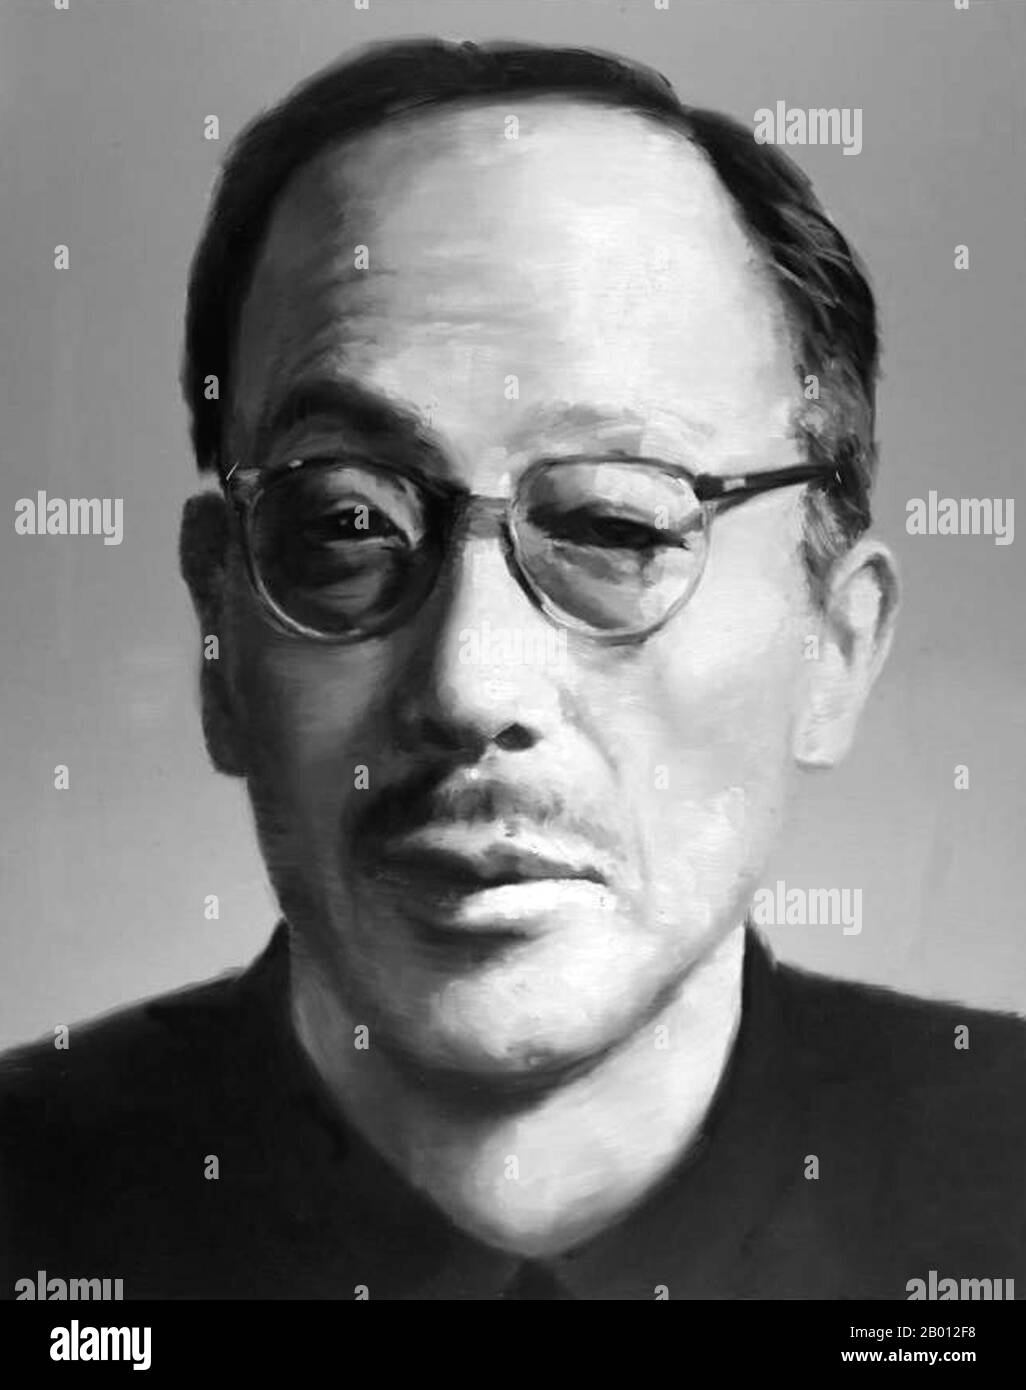 Chine : Kang Sheng (c.1898-16 décembre 1975), chef du renseignement du PCC, proche associé de Mao Zedong et policier secret craint. Kang Sheng (c.1898–16 décembre 1975) a supervisé le travail de l'appareil de sécurité et de renseignement de la République populaire de Chine au plus fort de la Révolution culturelle à la fin des années 1960. Il était un proche associé de Mao Tsé-toung et est resté au sommet du pouvoir pendant des décennies. Après sa mort, Kang Sheng a été accusé de partager la responsabilité avec le gang des quatre pour les excès de la Révolution culturelle et a été expulsé à titre posthume du parti. Banque D'Images